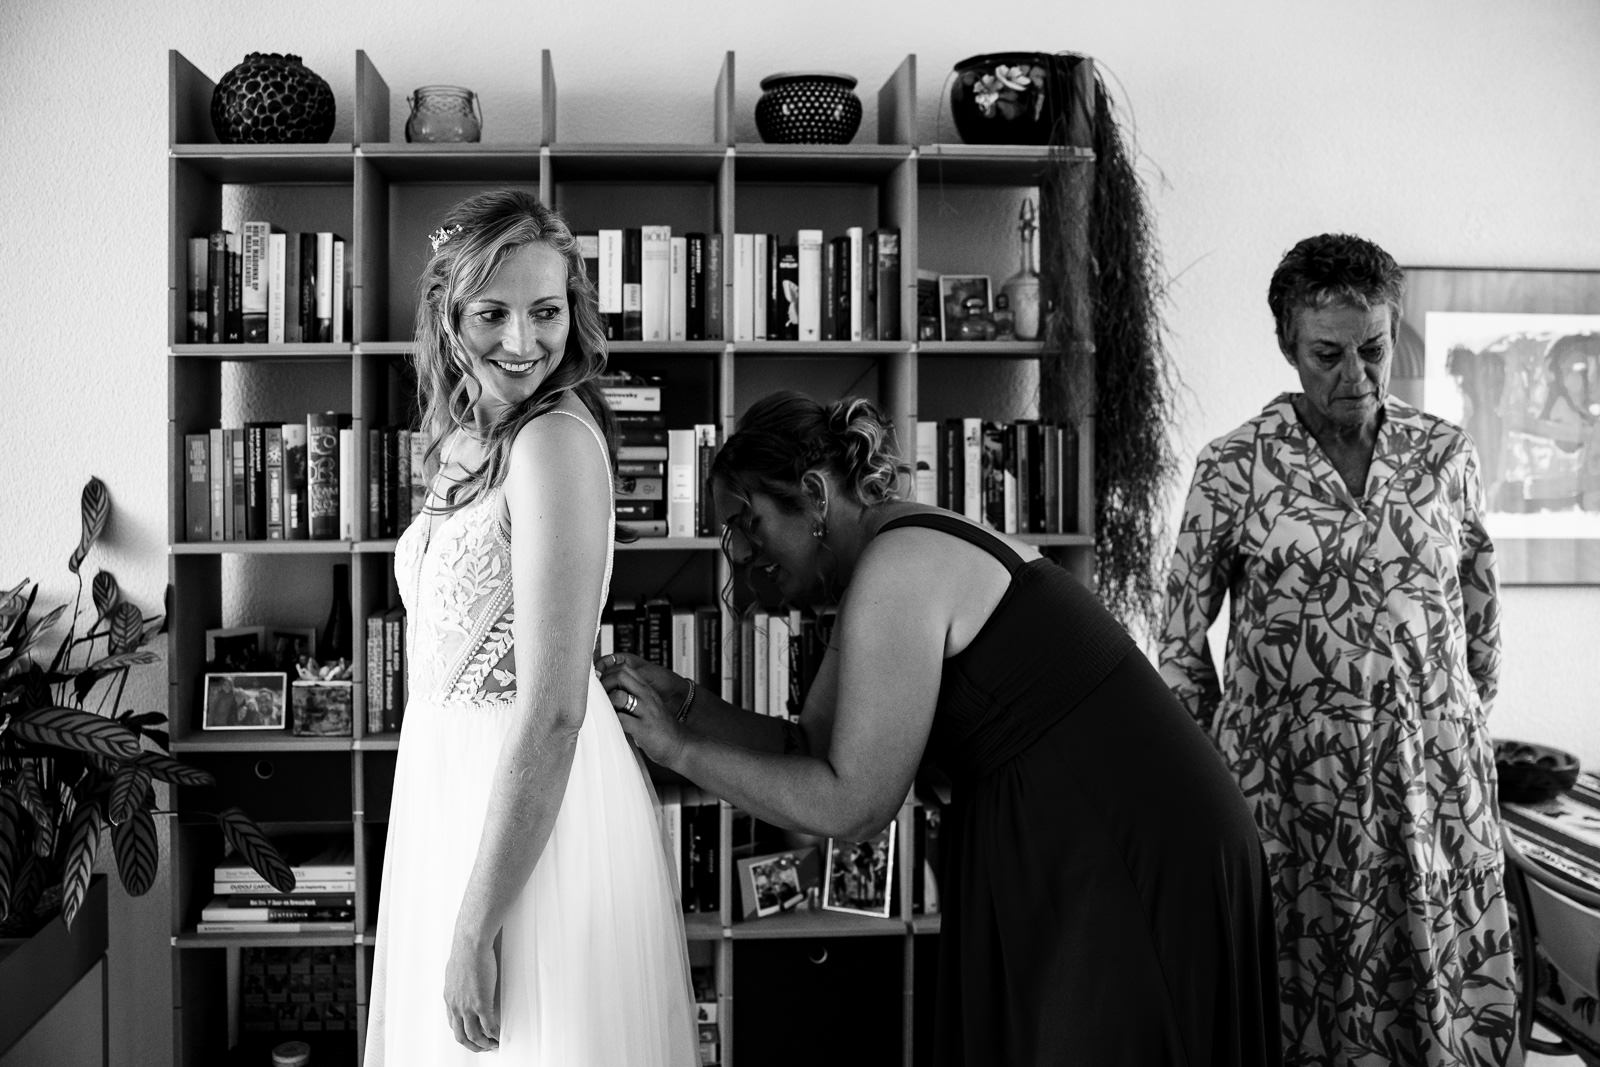 Trouwfotograaf Oud Poelgeest bruid doet trouwjurk aan